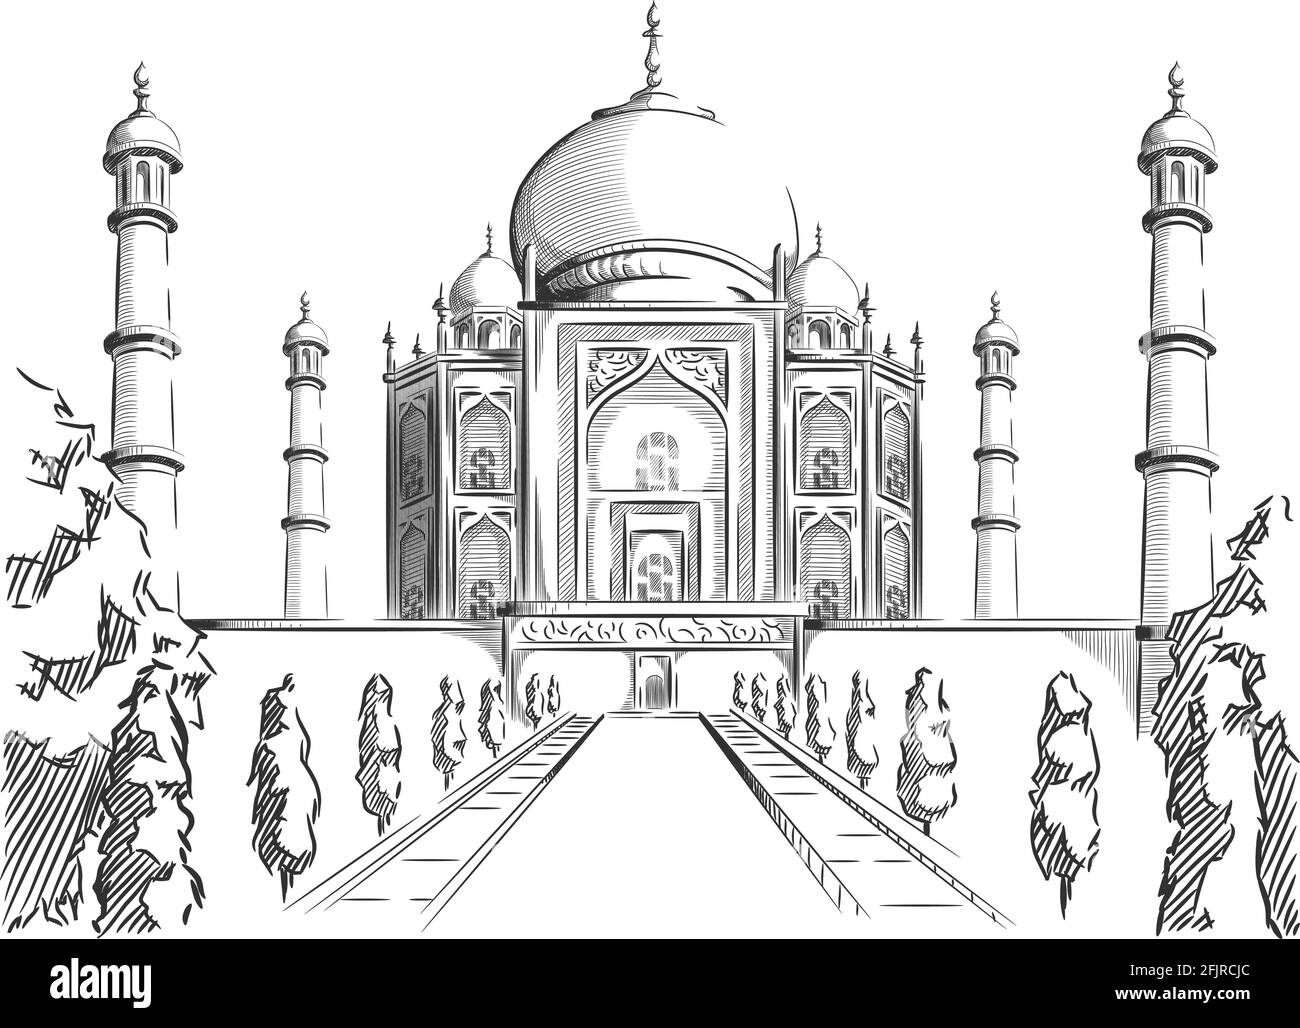 Skizze Doodle Taj Mahal Landmark Indien Ziel Umriss Vektor Stock Vektor